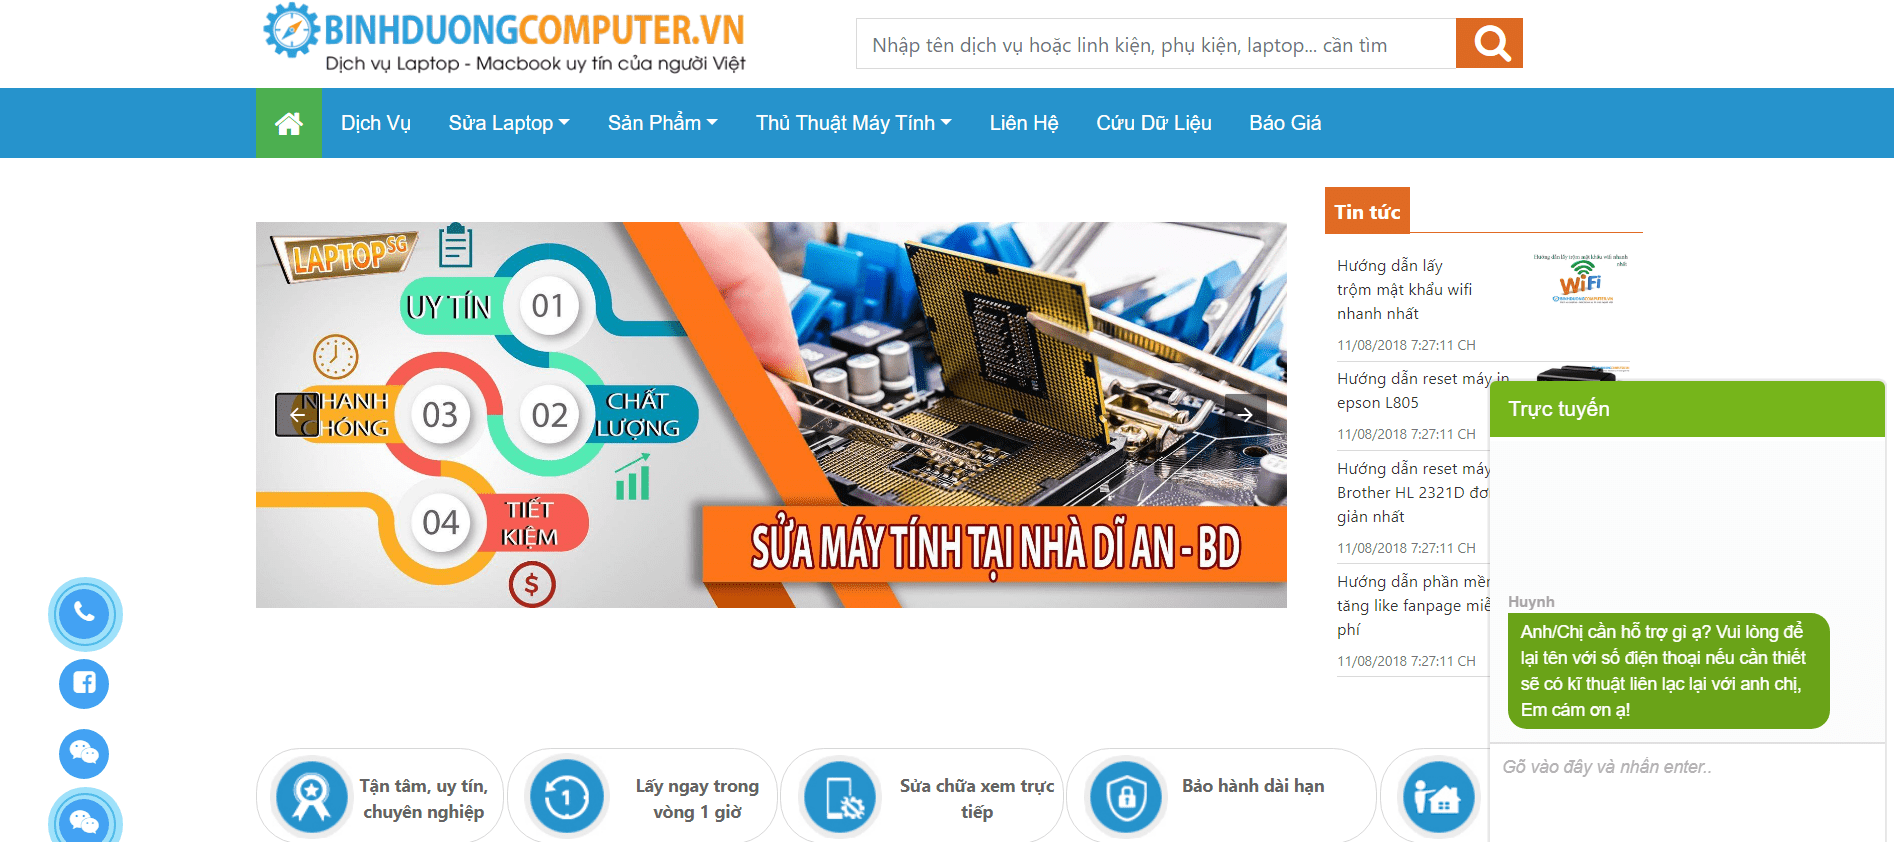 Поправка на компјутер на Binh Duong